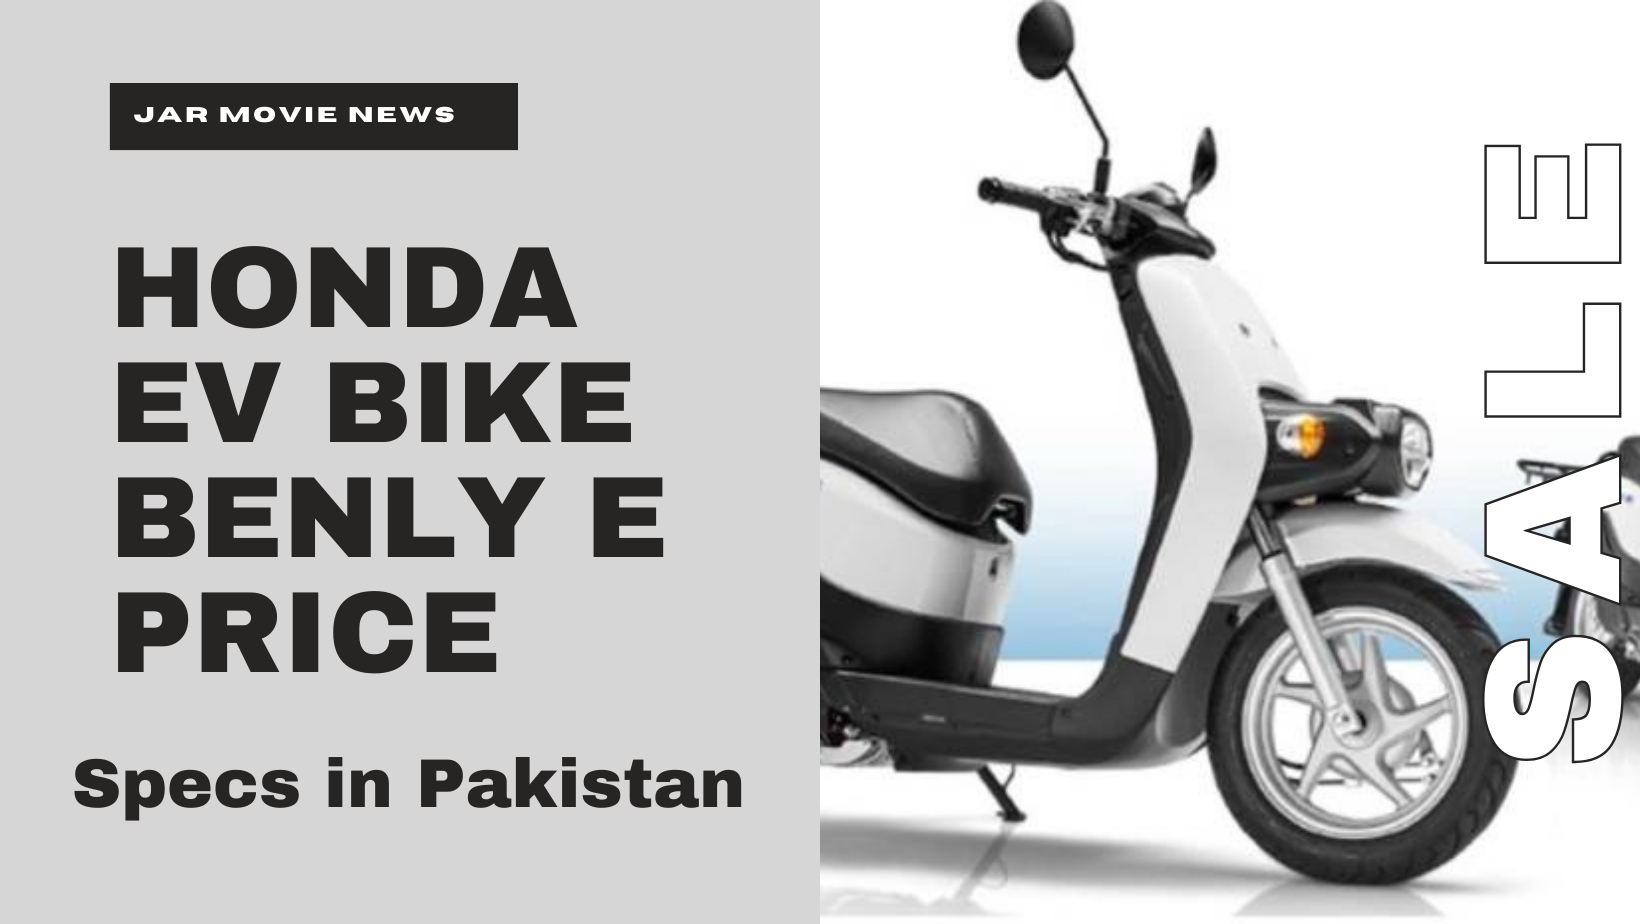 Honda EV bike BENLY e price, specs in Pakistan